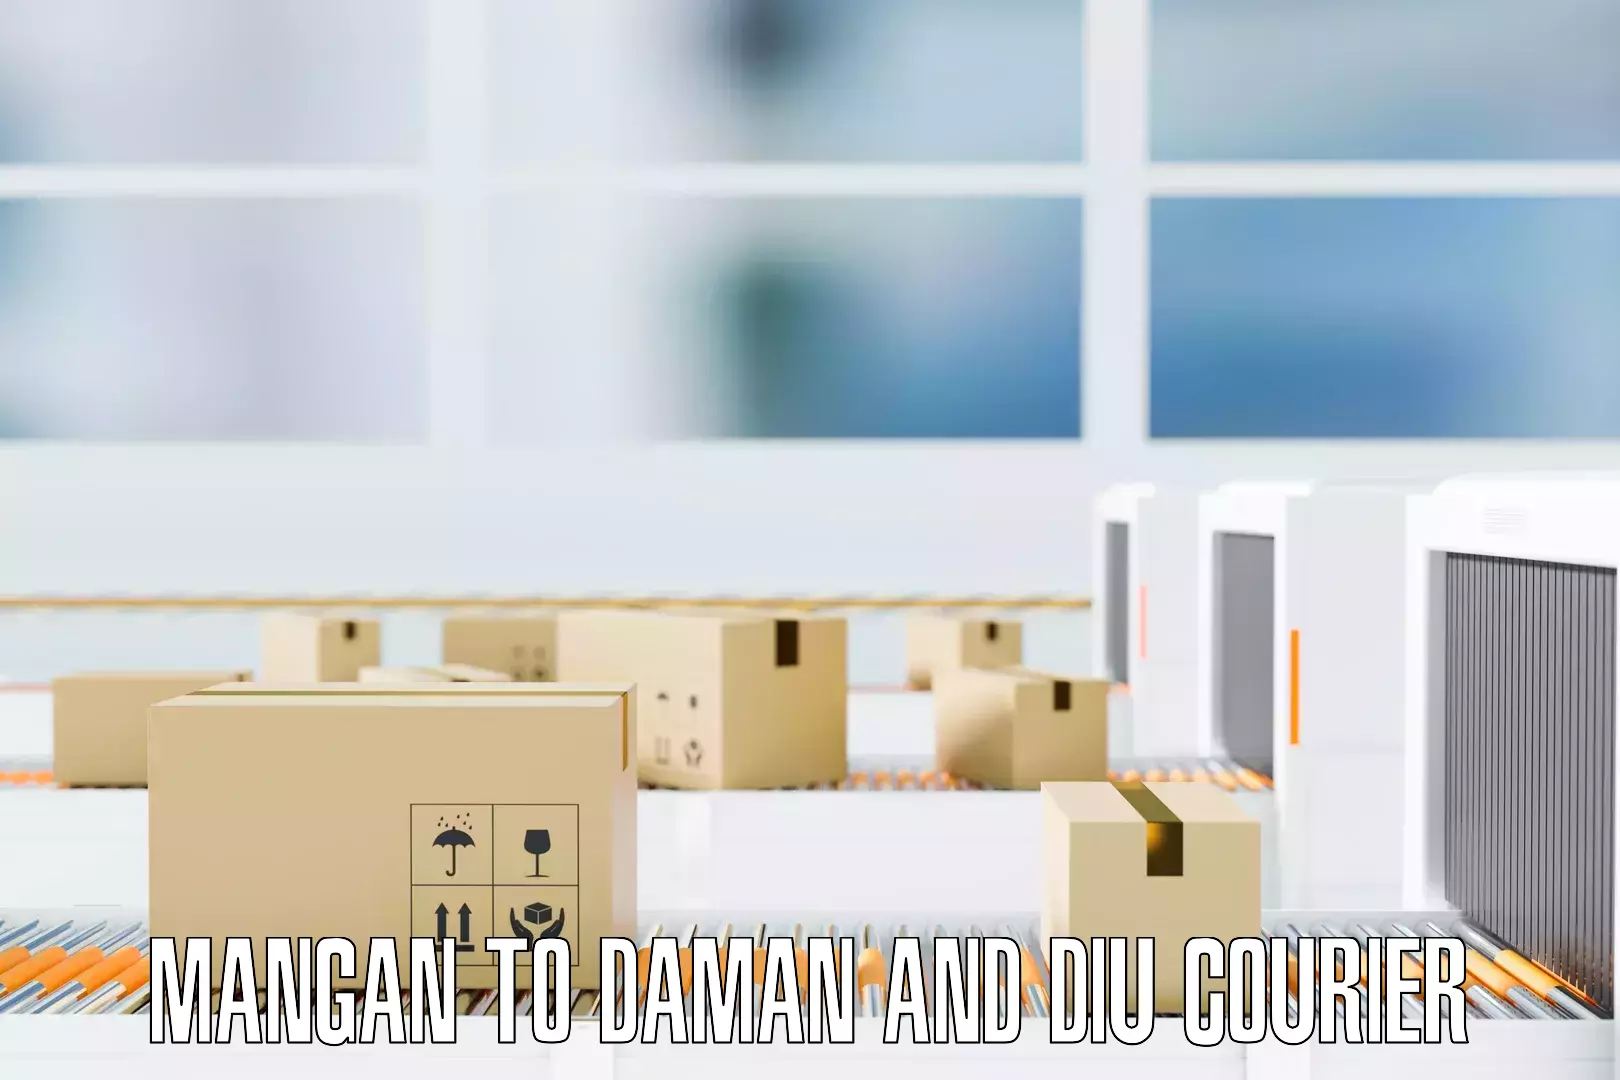 Residential furniture transport Mangan to Daman